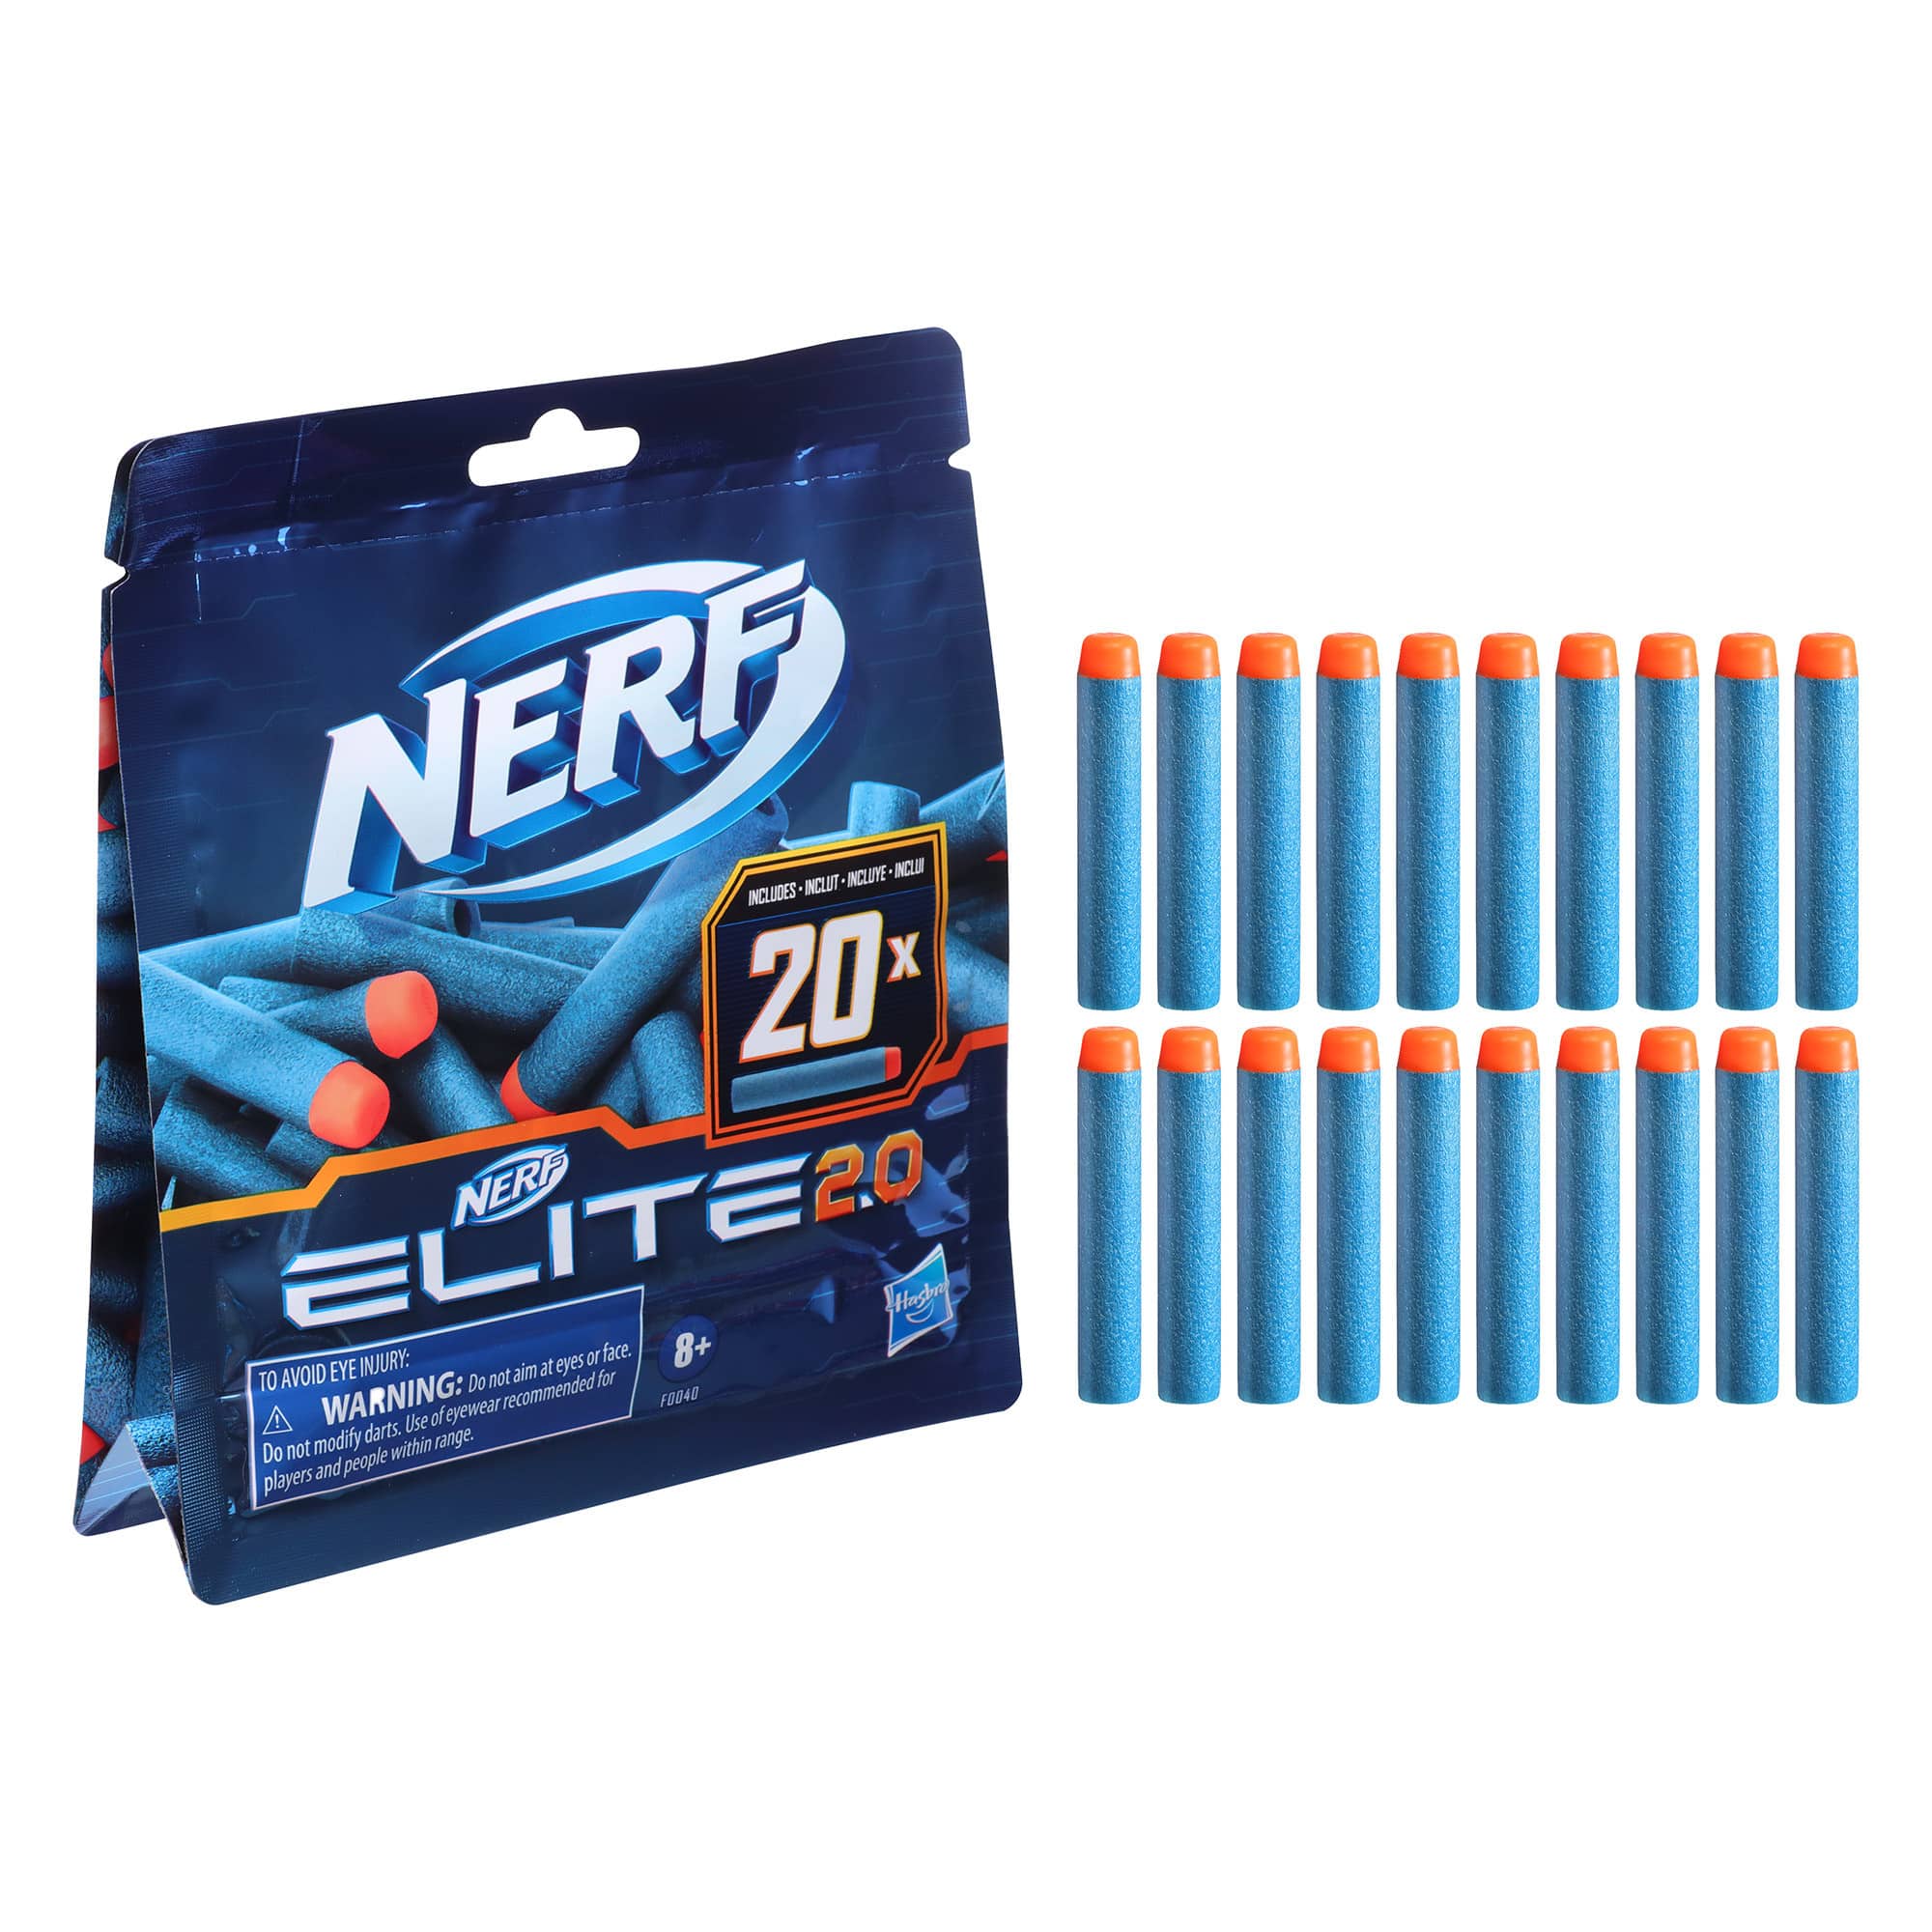 Nerf - Elite 2.0 Darts - 20 Pack Refill